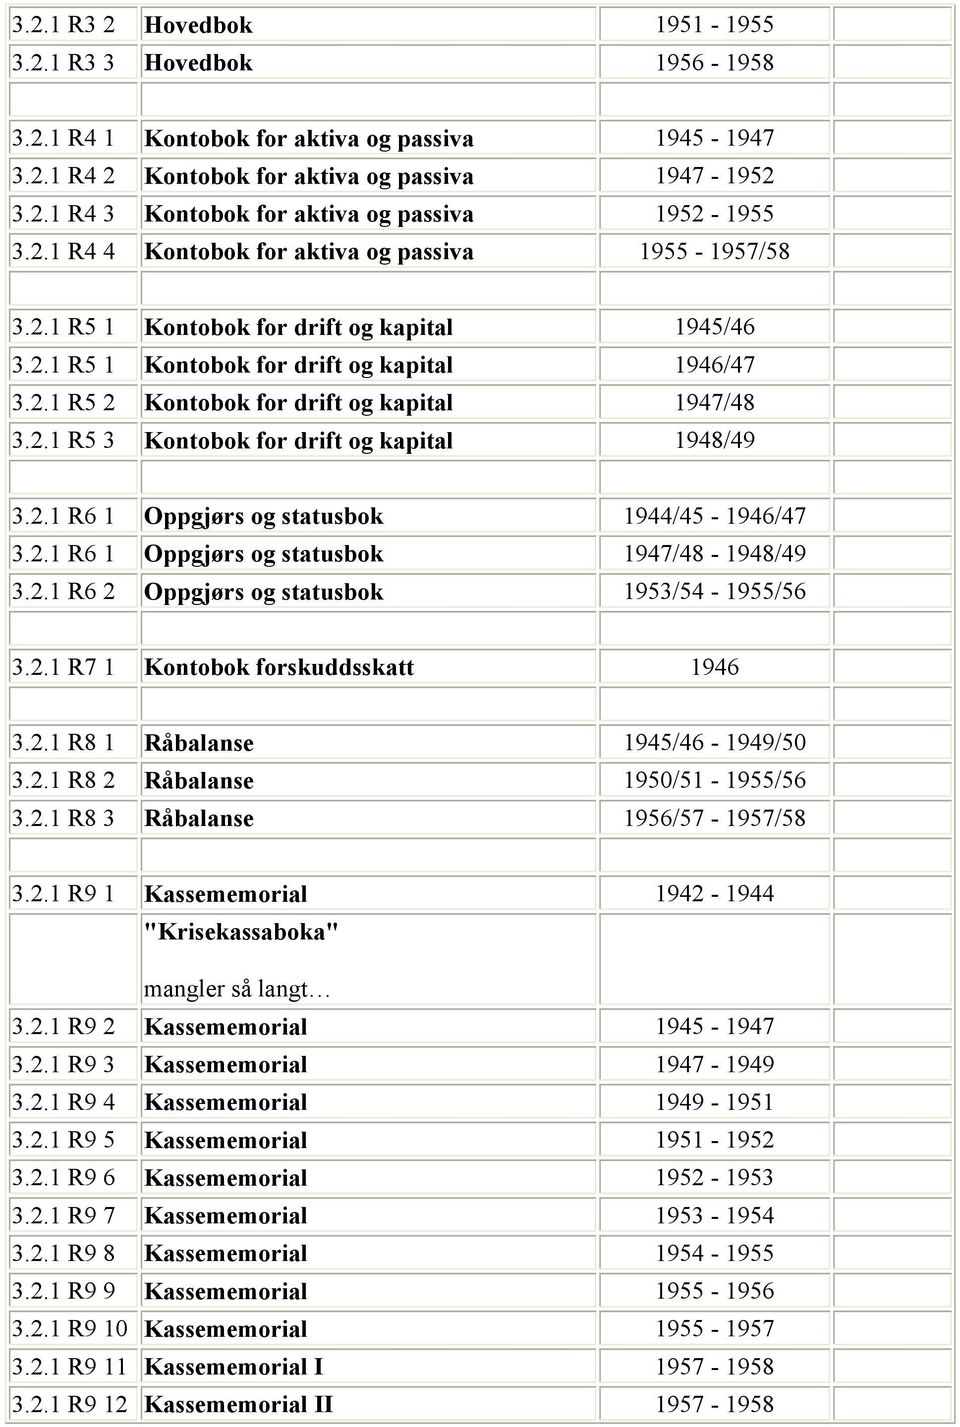 2.1 R5 3 Kontobok for drift og kapital 1948/49 3.2.1 R6 1 Oppgjørs og statusbok 1944/45-1946/47 3.2.1 R6 1 Oppgjørs og statusbok 1947/48-1948/49 3.2.1 R6 2 Oppgjørs og statusbok 1953/54-1955/56 3.2.1 R7 1 Kontobok forskuddsskatt 1946 3.